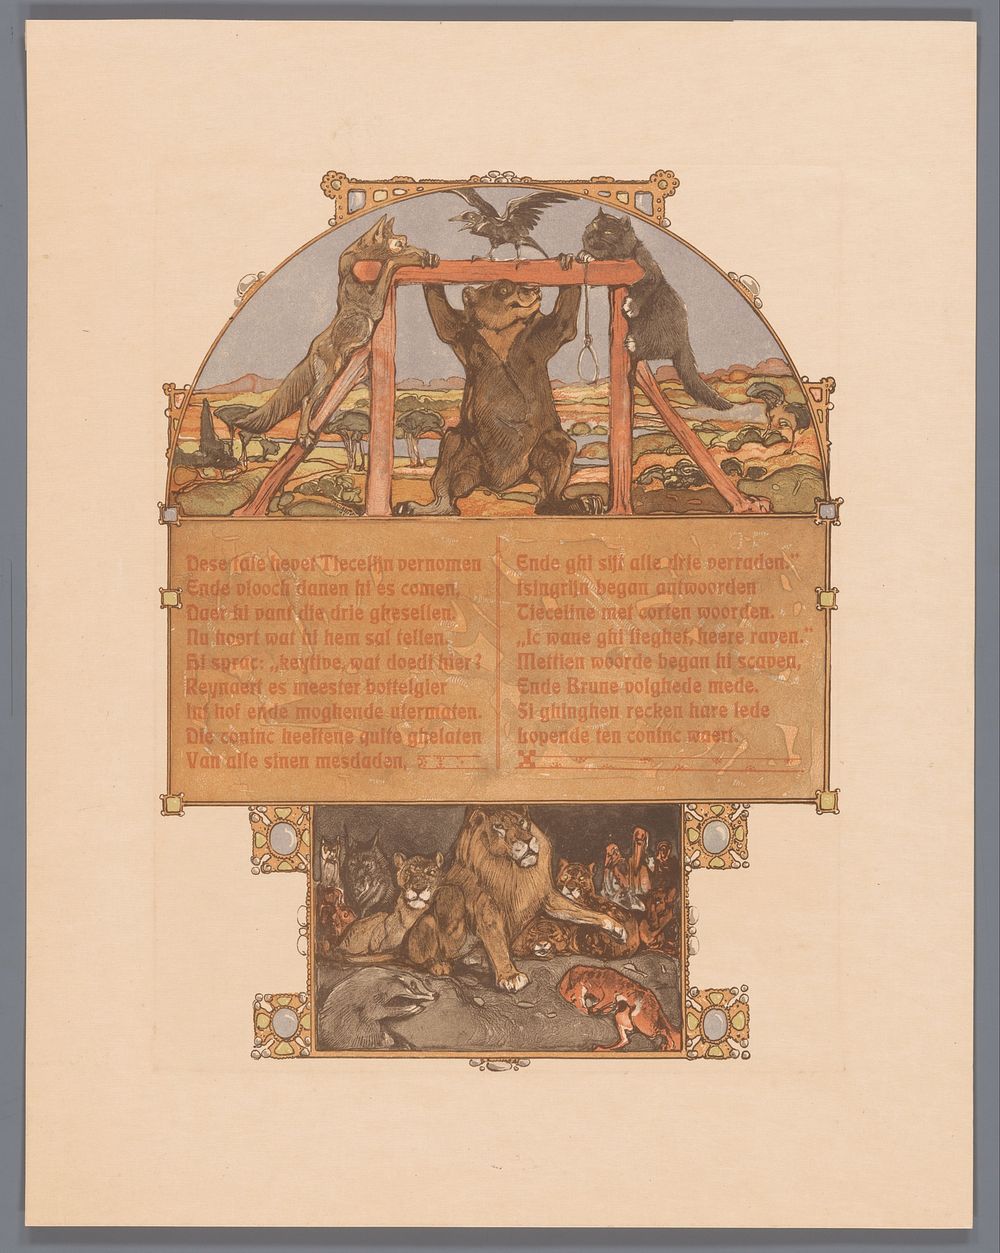 Vos (Reinaert), beer (Bruun), kat (Tybeert) en raaf (Tiecelijn) bij galg (1910) by Bernard Willem Wierink